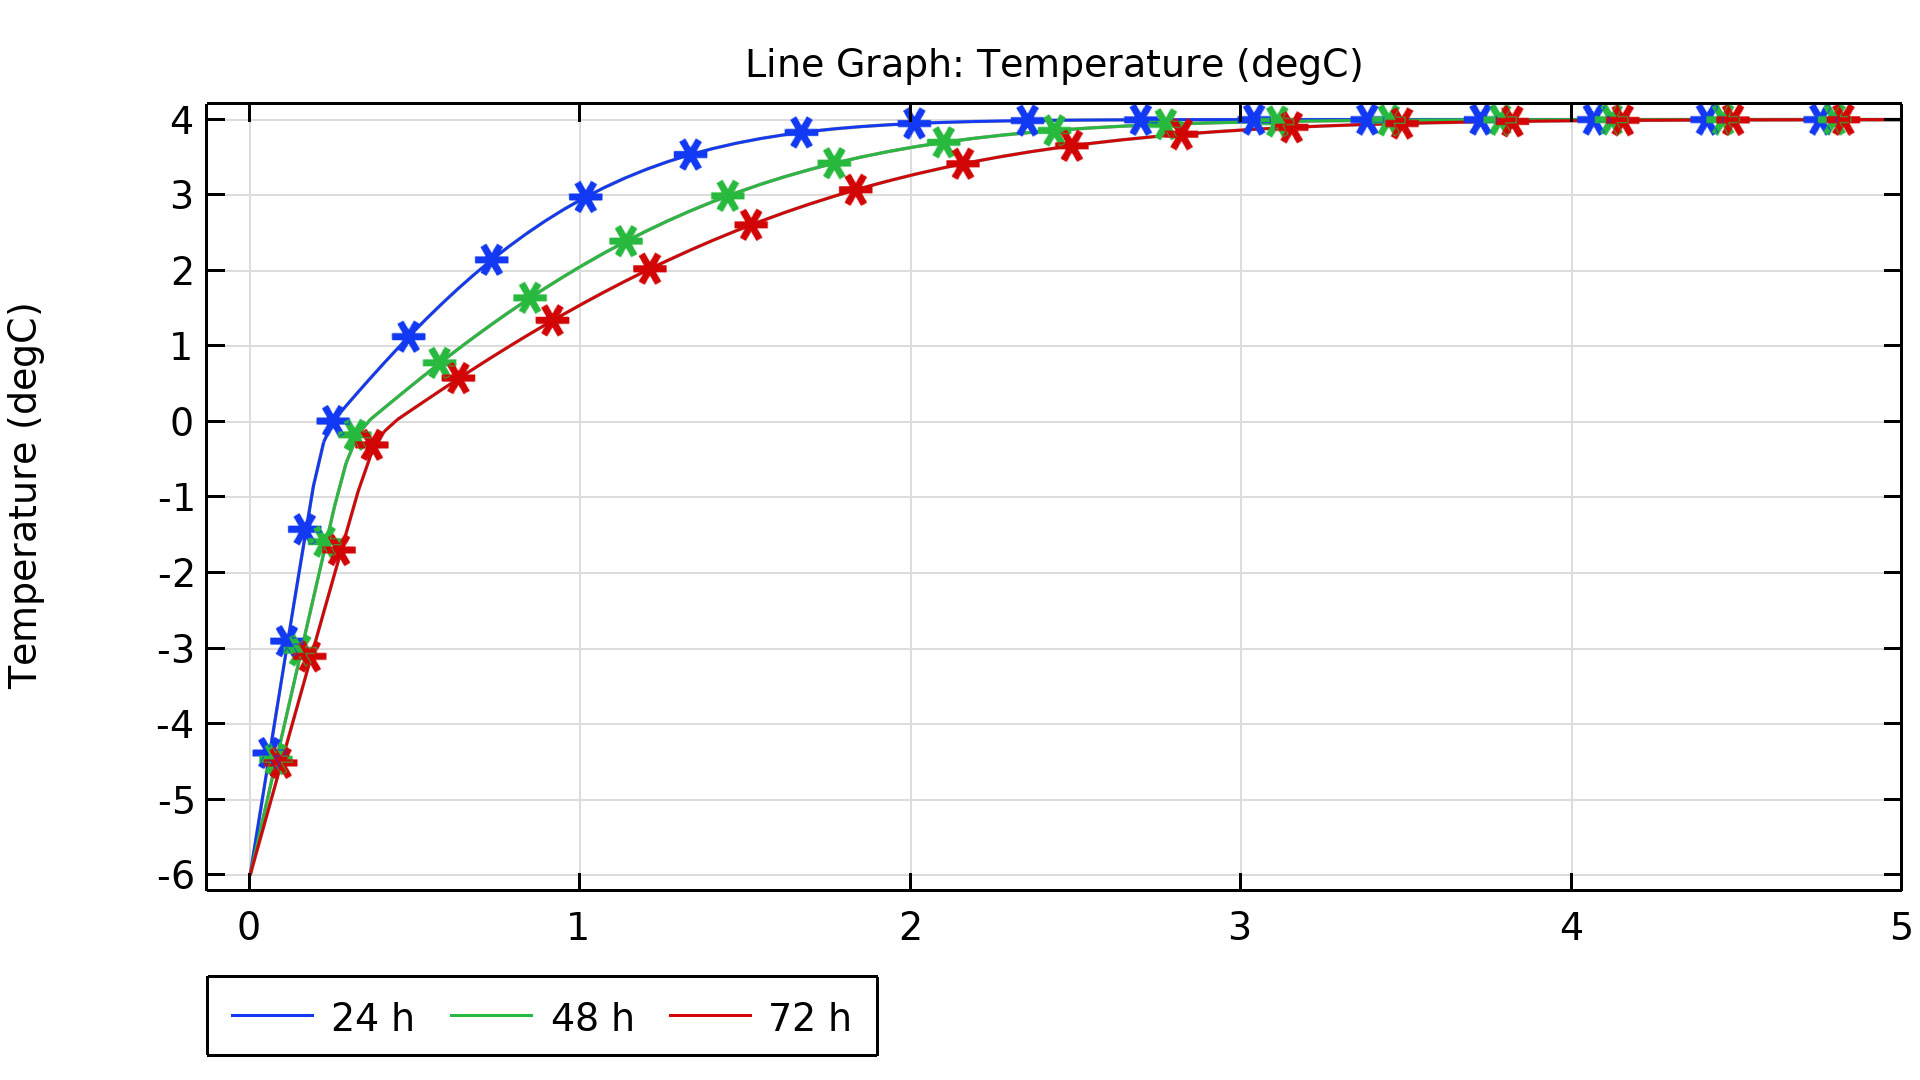 线结果图，其中显示一天、两天和三天后的温度，分别用蓝色、绿色和红色进行标记。